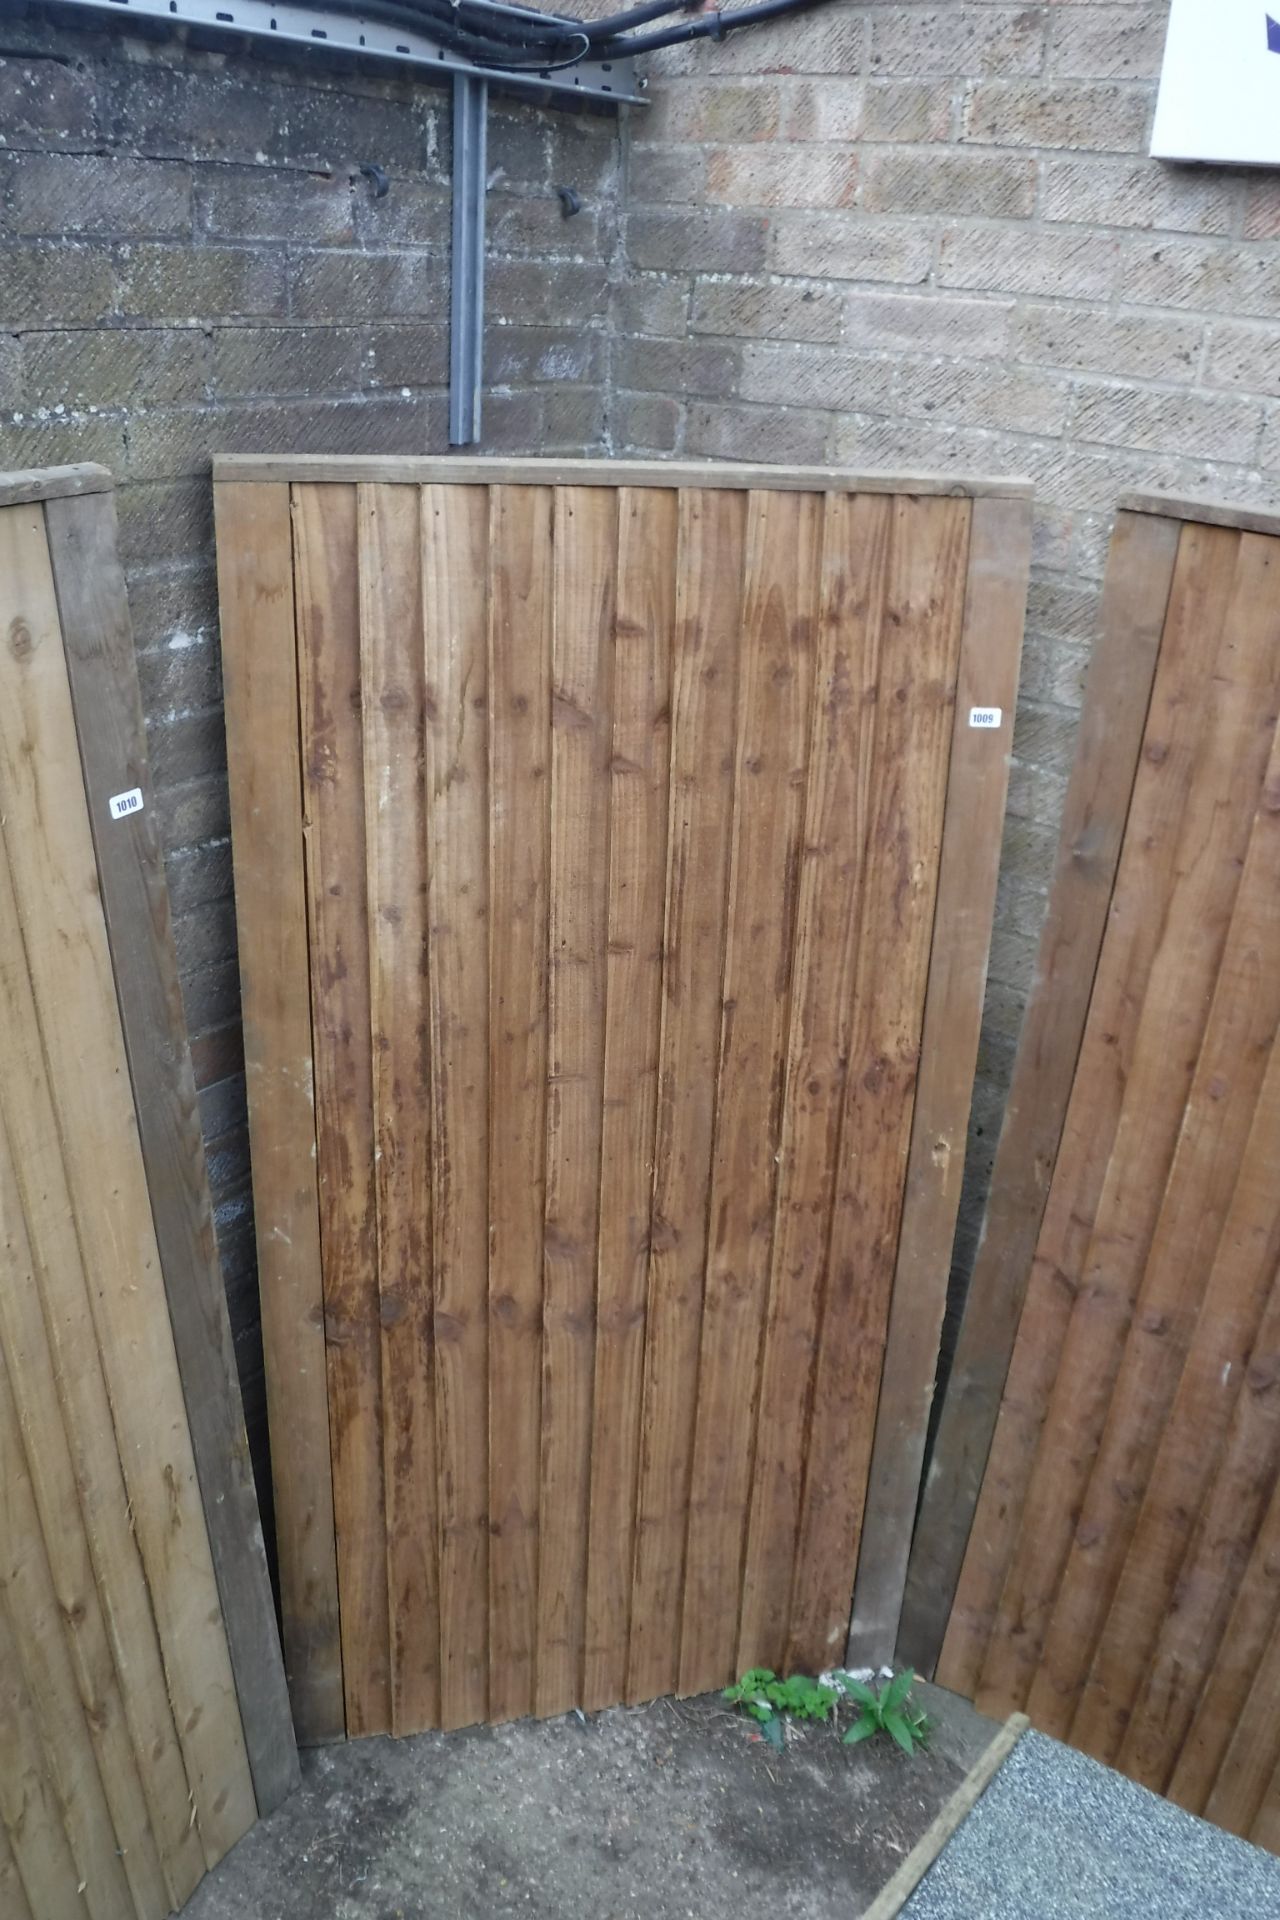 Feather edged wooden garden gate, 91cm(w) x 175cm(h)